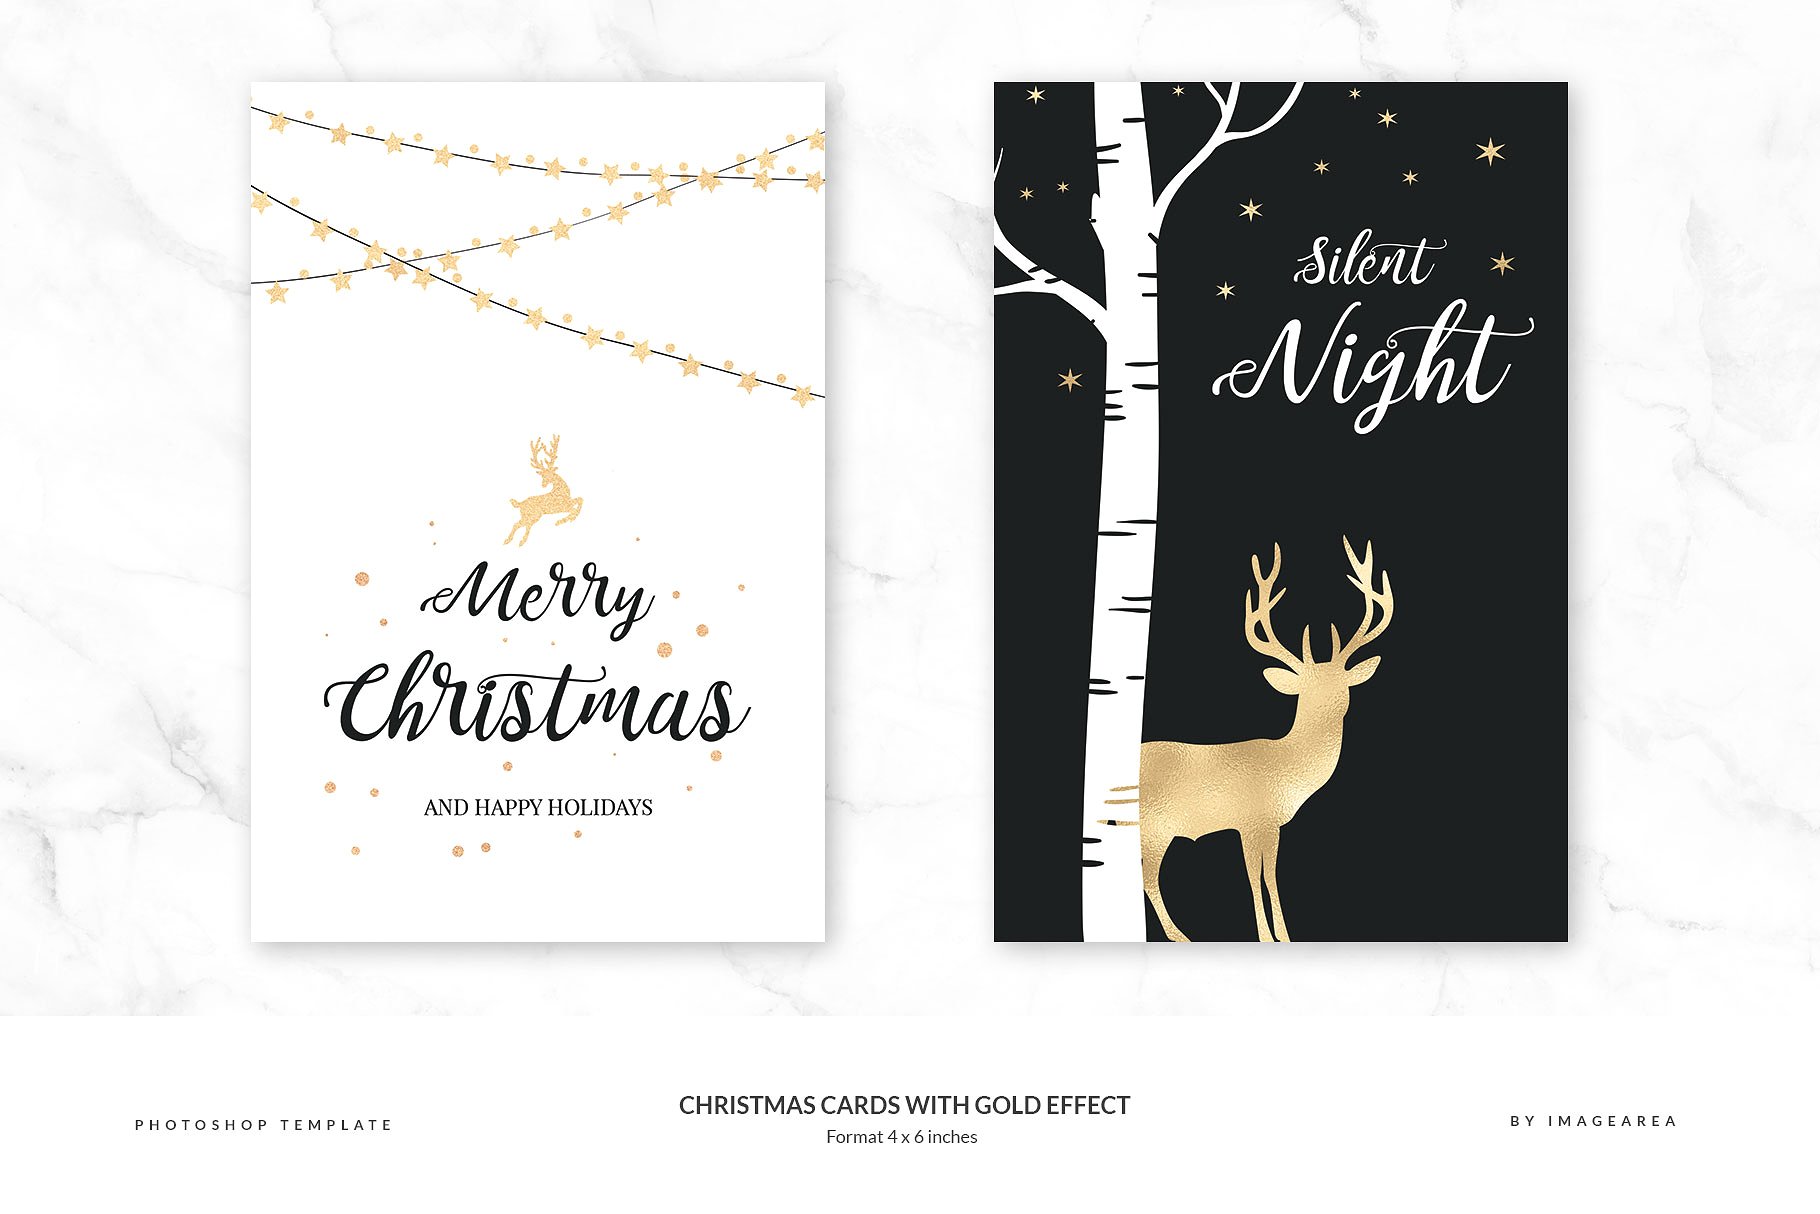 铂金镶嵌效果圣诞节贺卡模板 Christmas Cards with Gold Effect插图